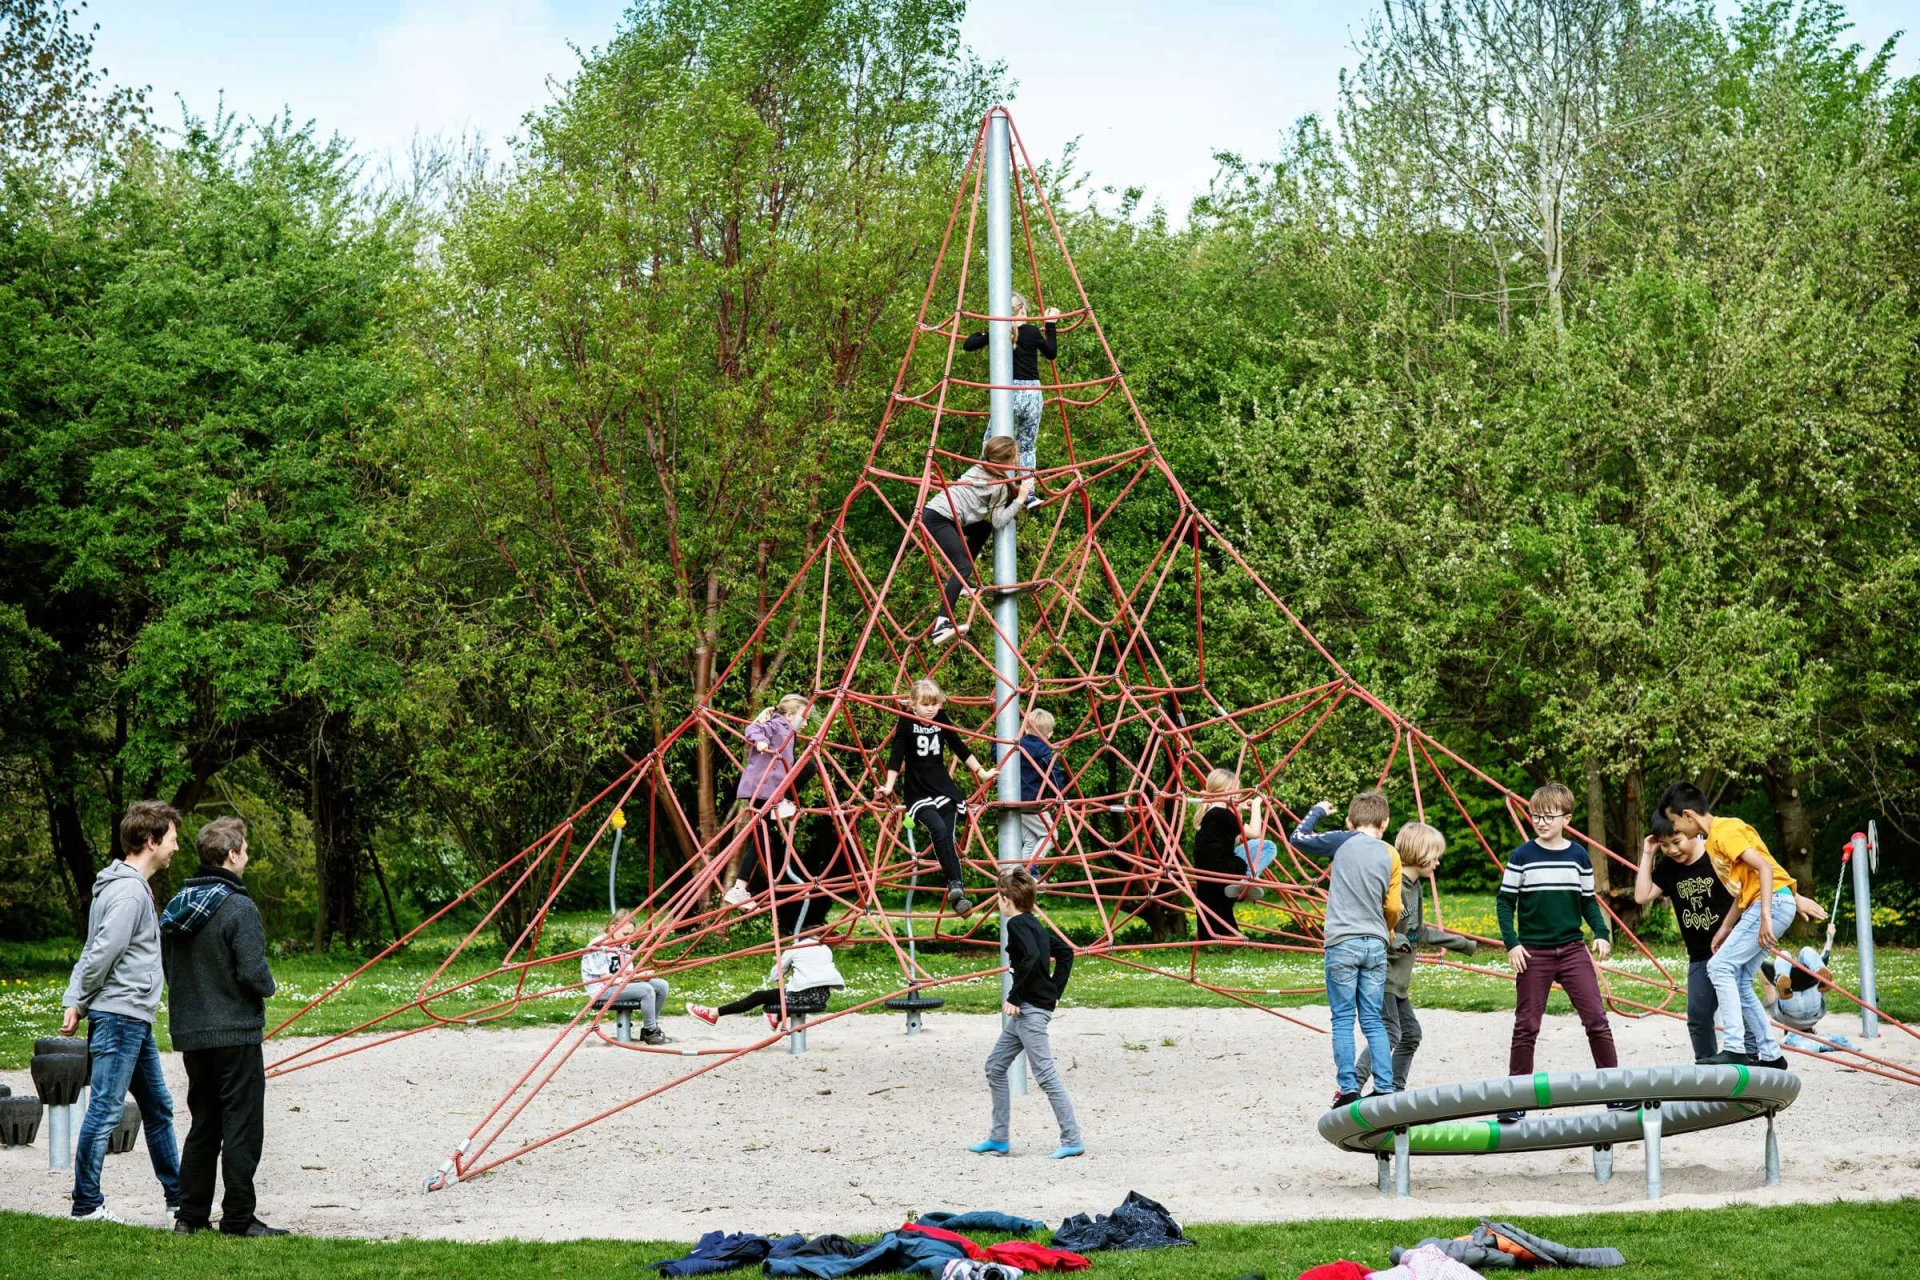 skupina lidí hrajících si na dětském hřišti na prolézačkách ve tvaru pyramidy.